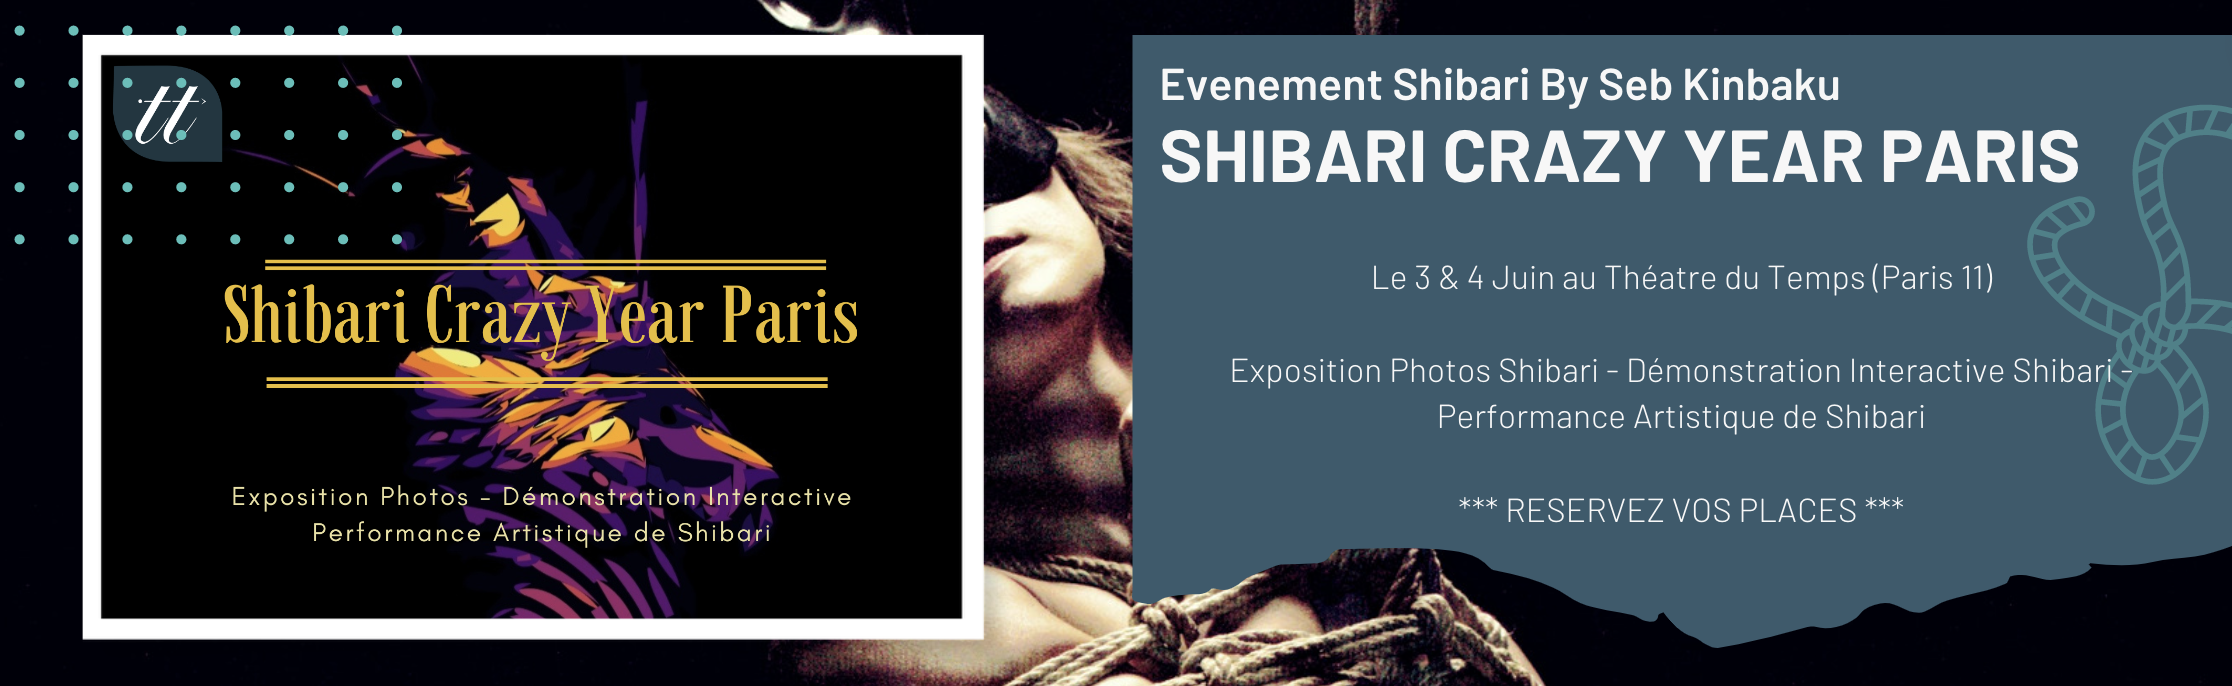 Exposition Photos Shibari - Démonstration Interactive Shibari - Performance Artistique de Shibari